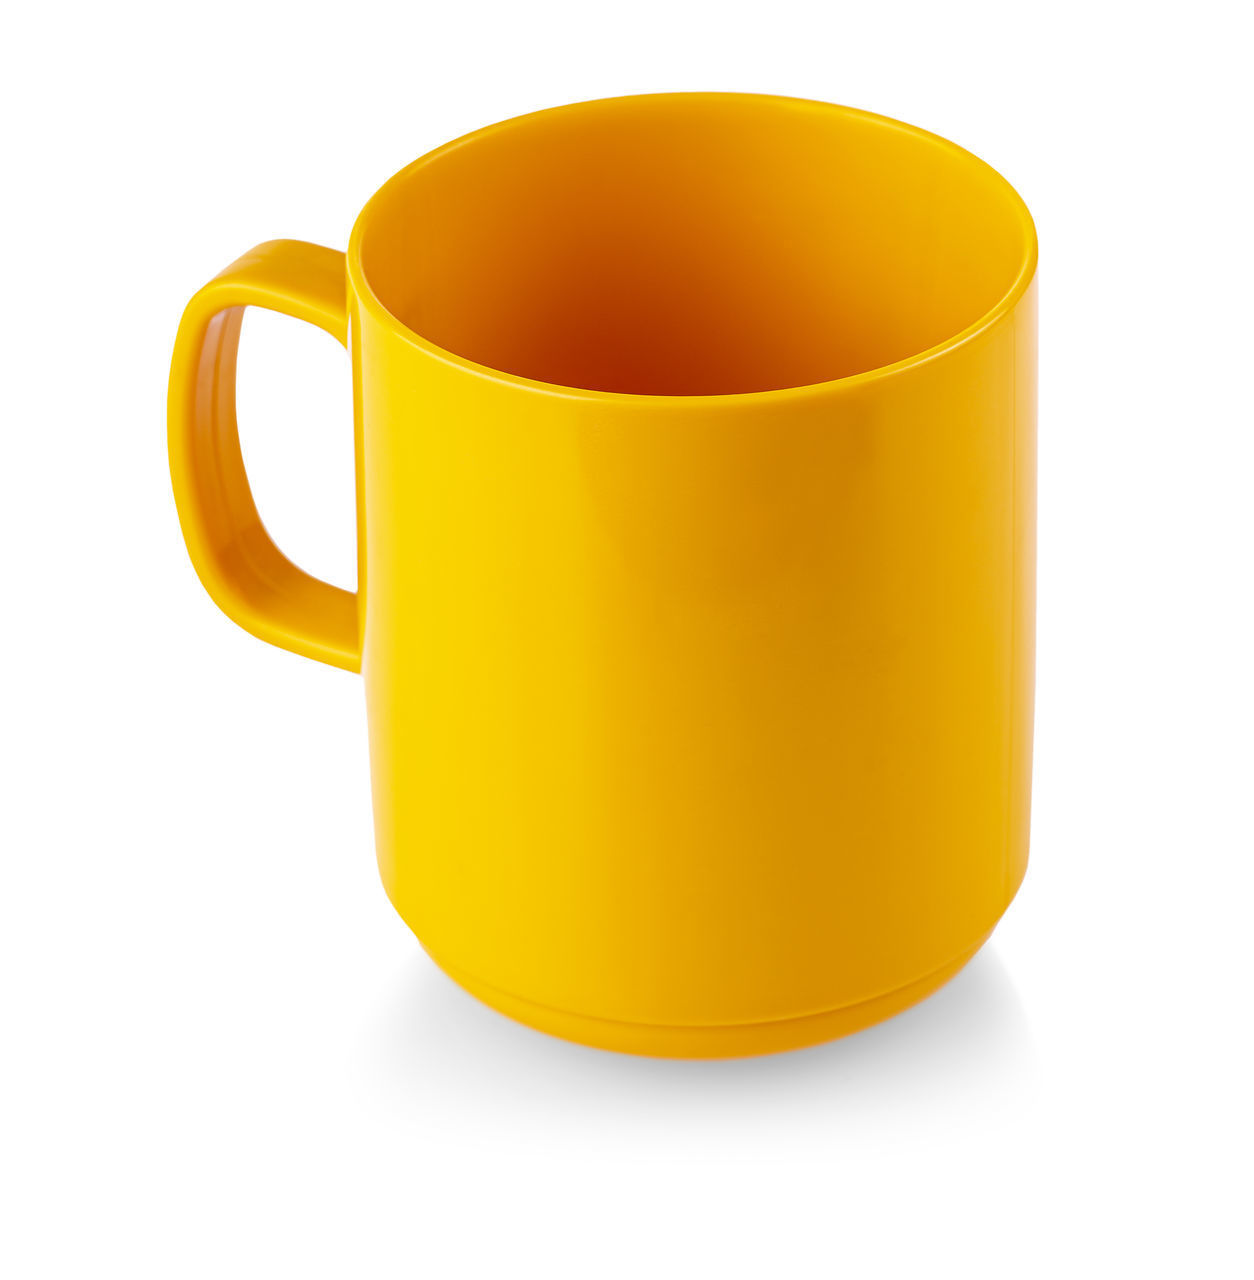 CLOSE-UP OF ORANGE TEA CUP